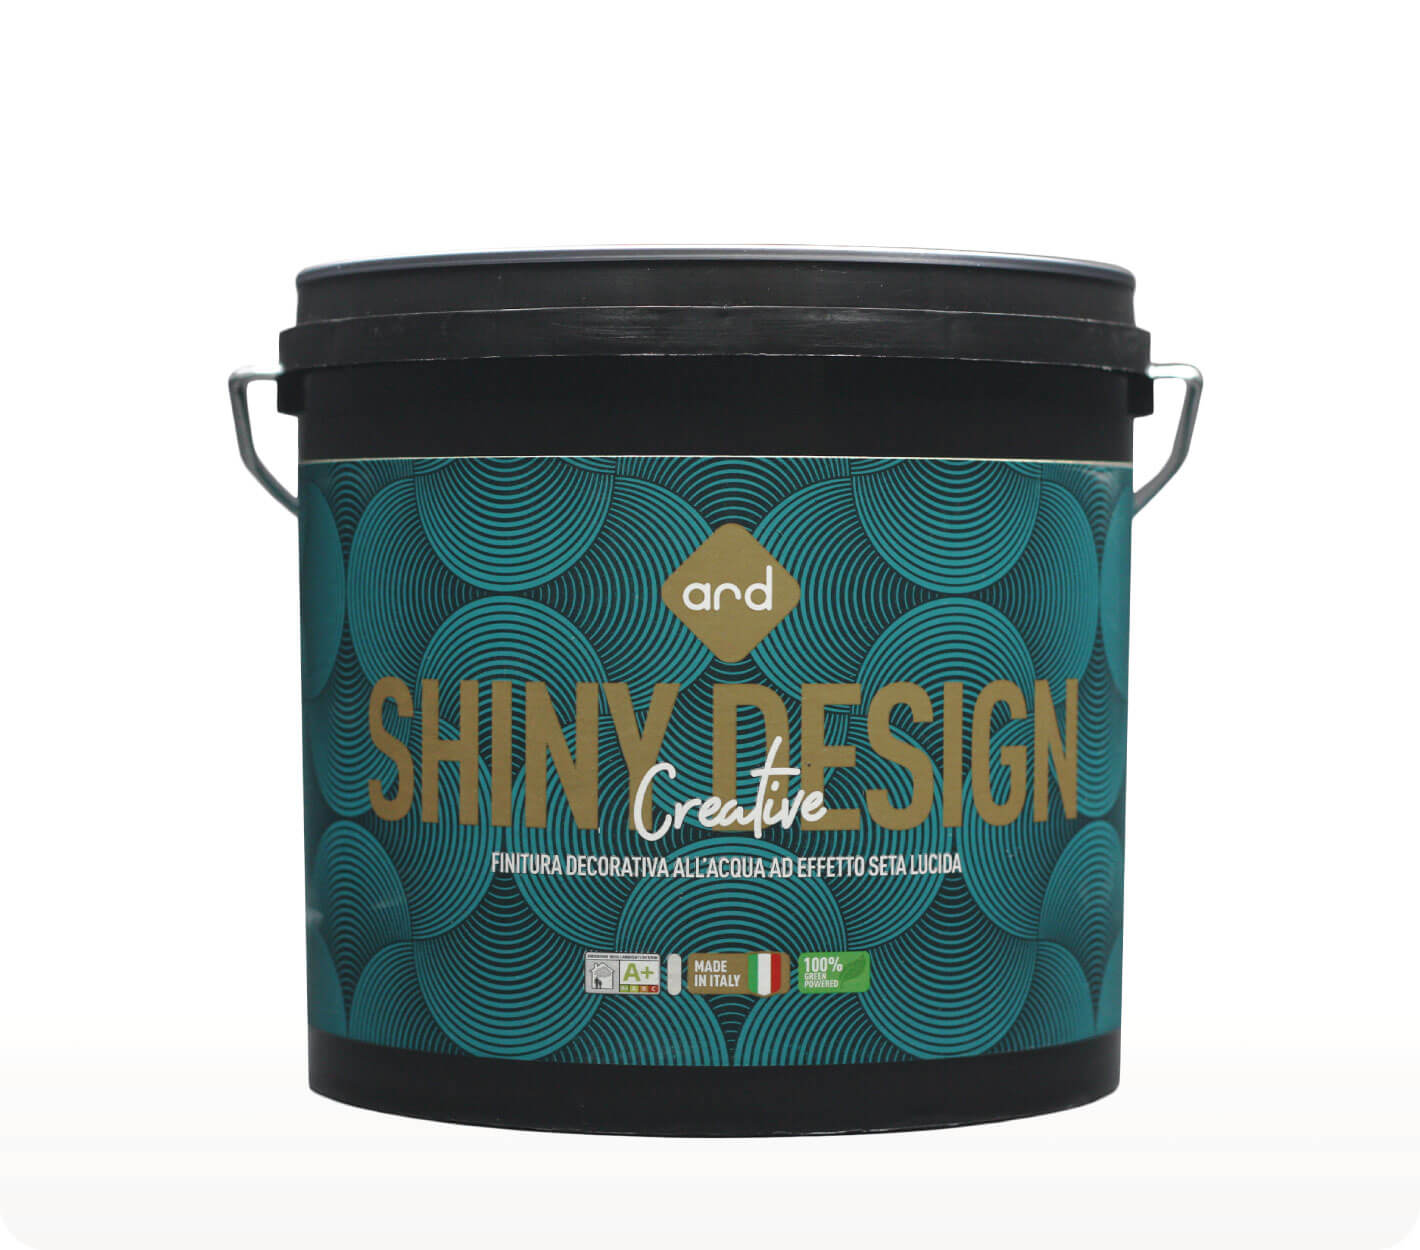 Creative Shiny Design - pittura decorativa effetto seta lucida - Ard Raccanello